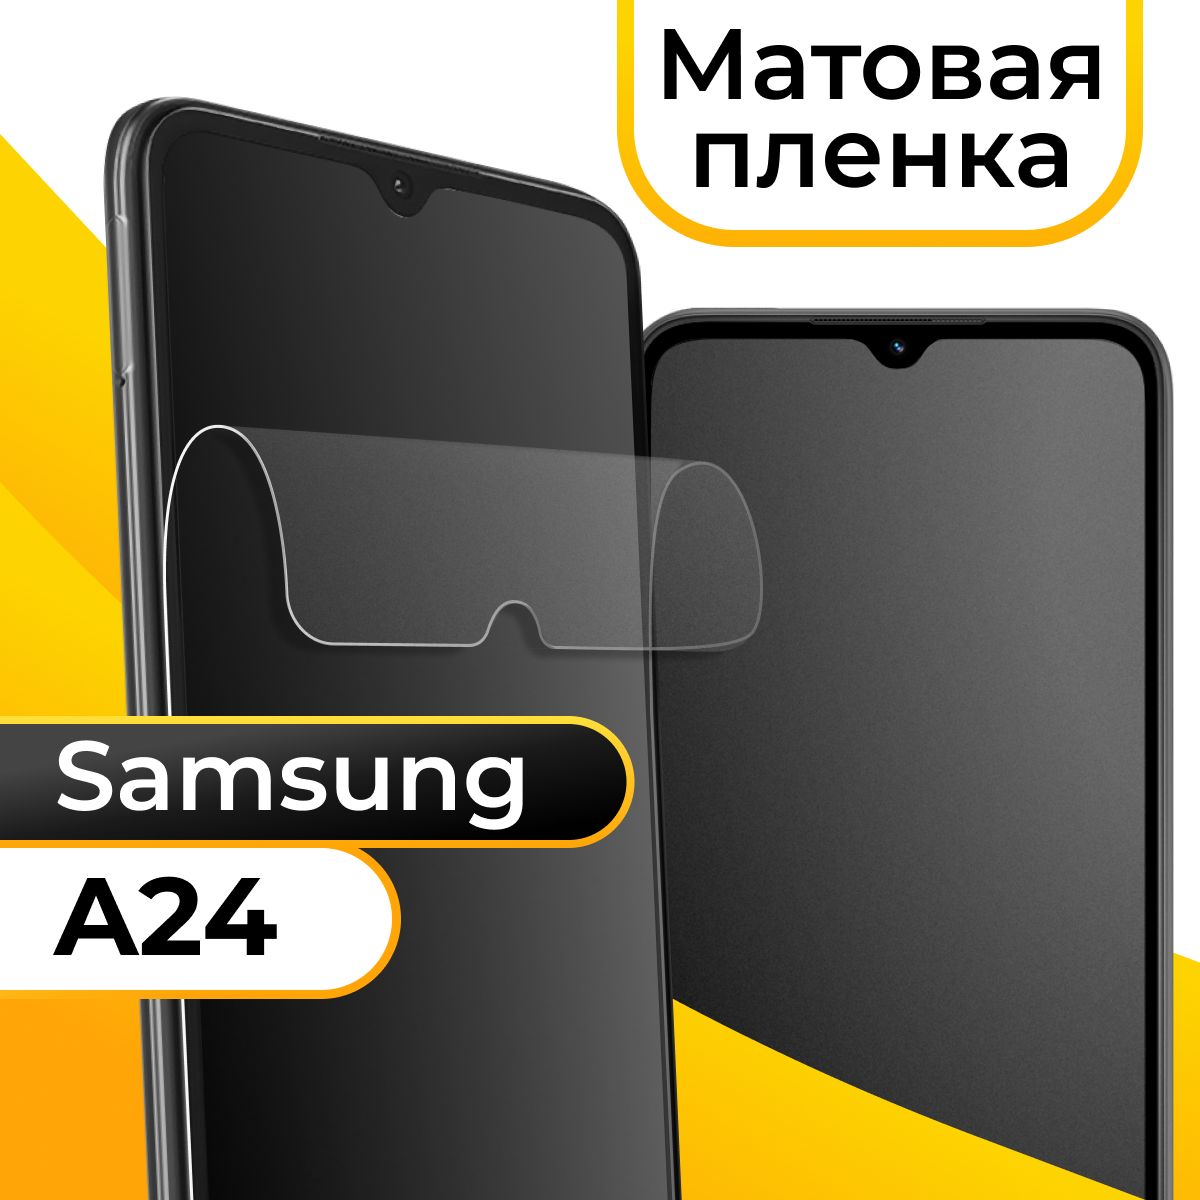 Комплект 2 шт. Матовая пленка для смартфона Samsung Galaxy A24 / Защитная противоударная пленка на телефон Самсунг Галакси А24 / Гидрогелевая пленка